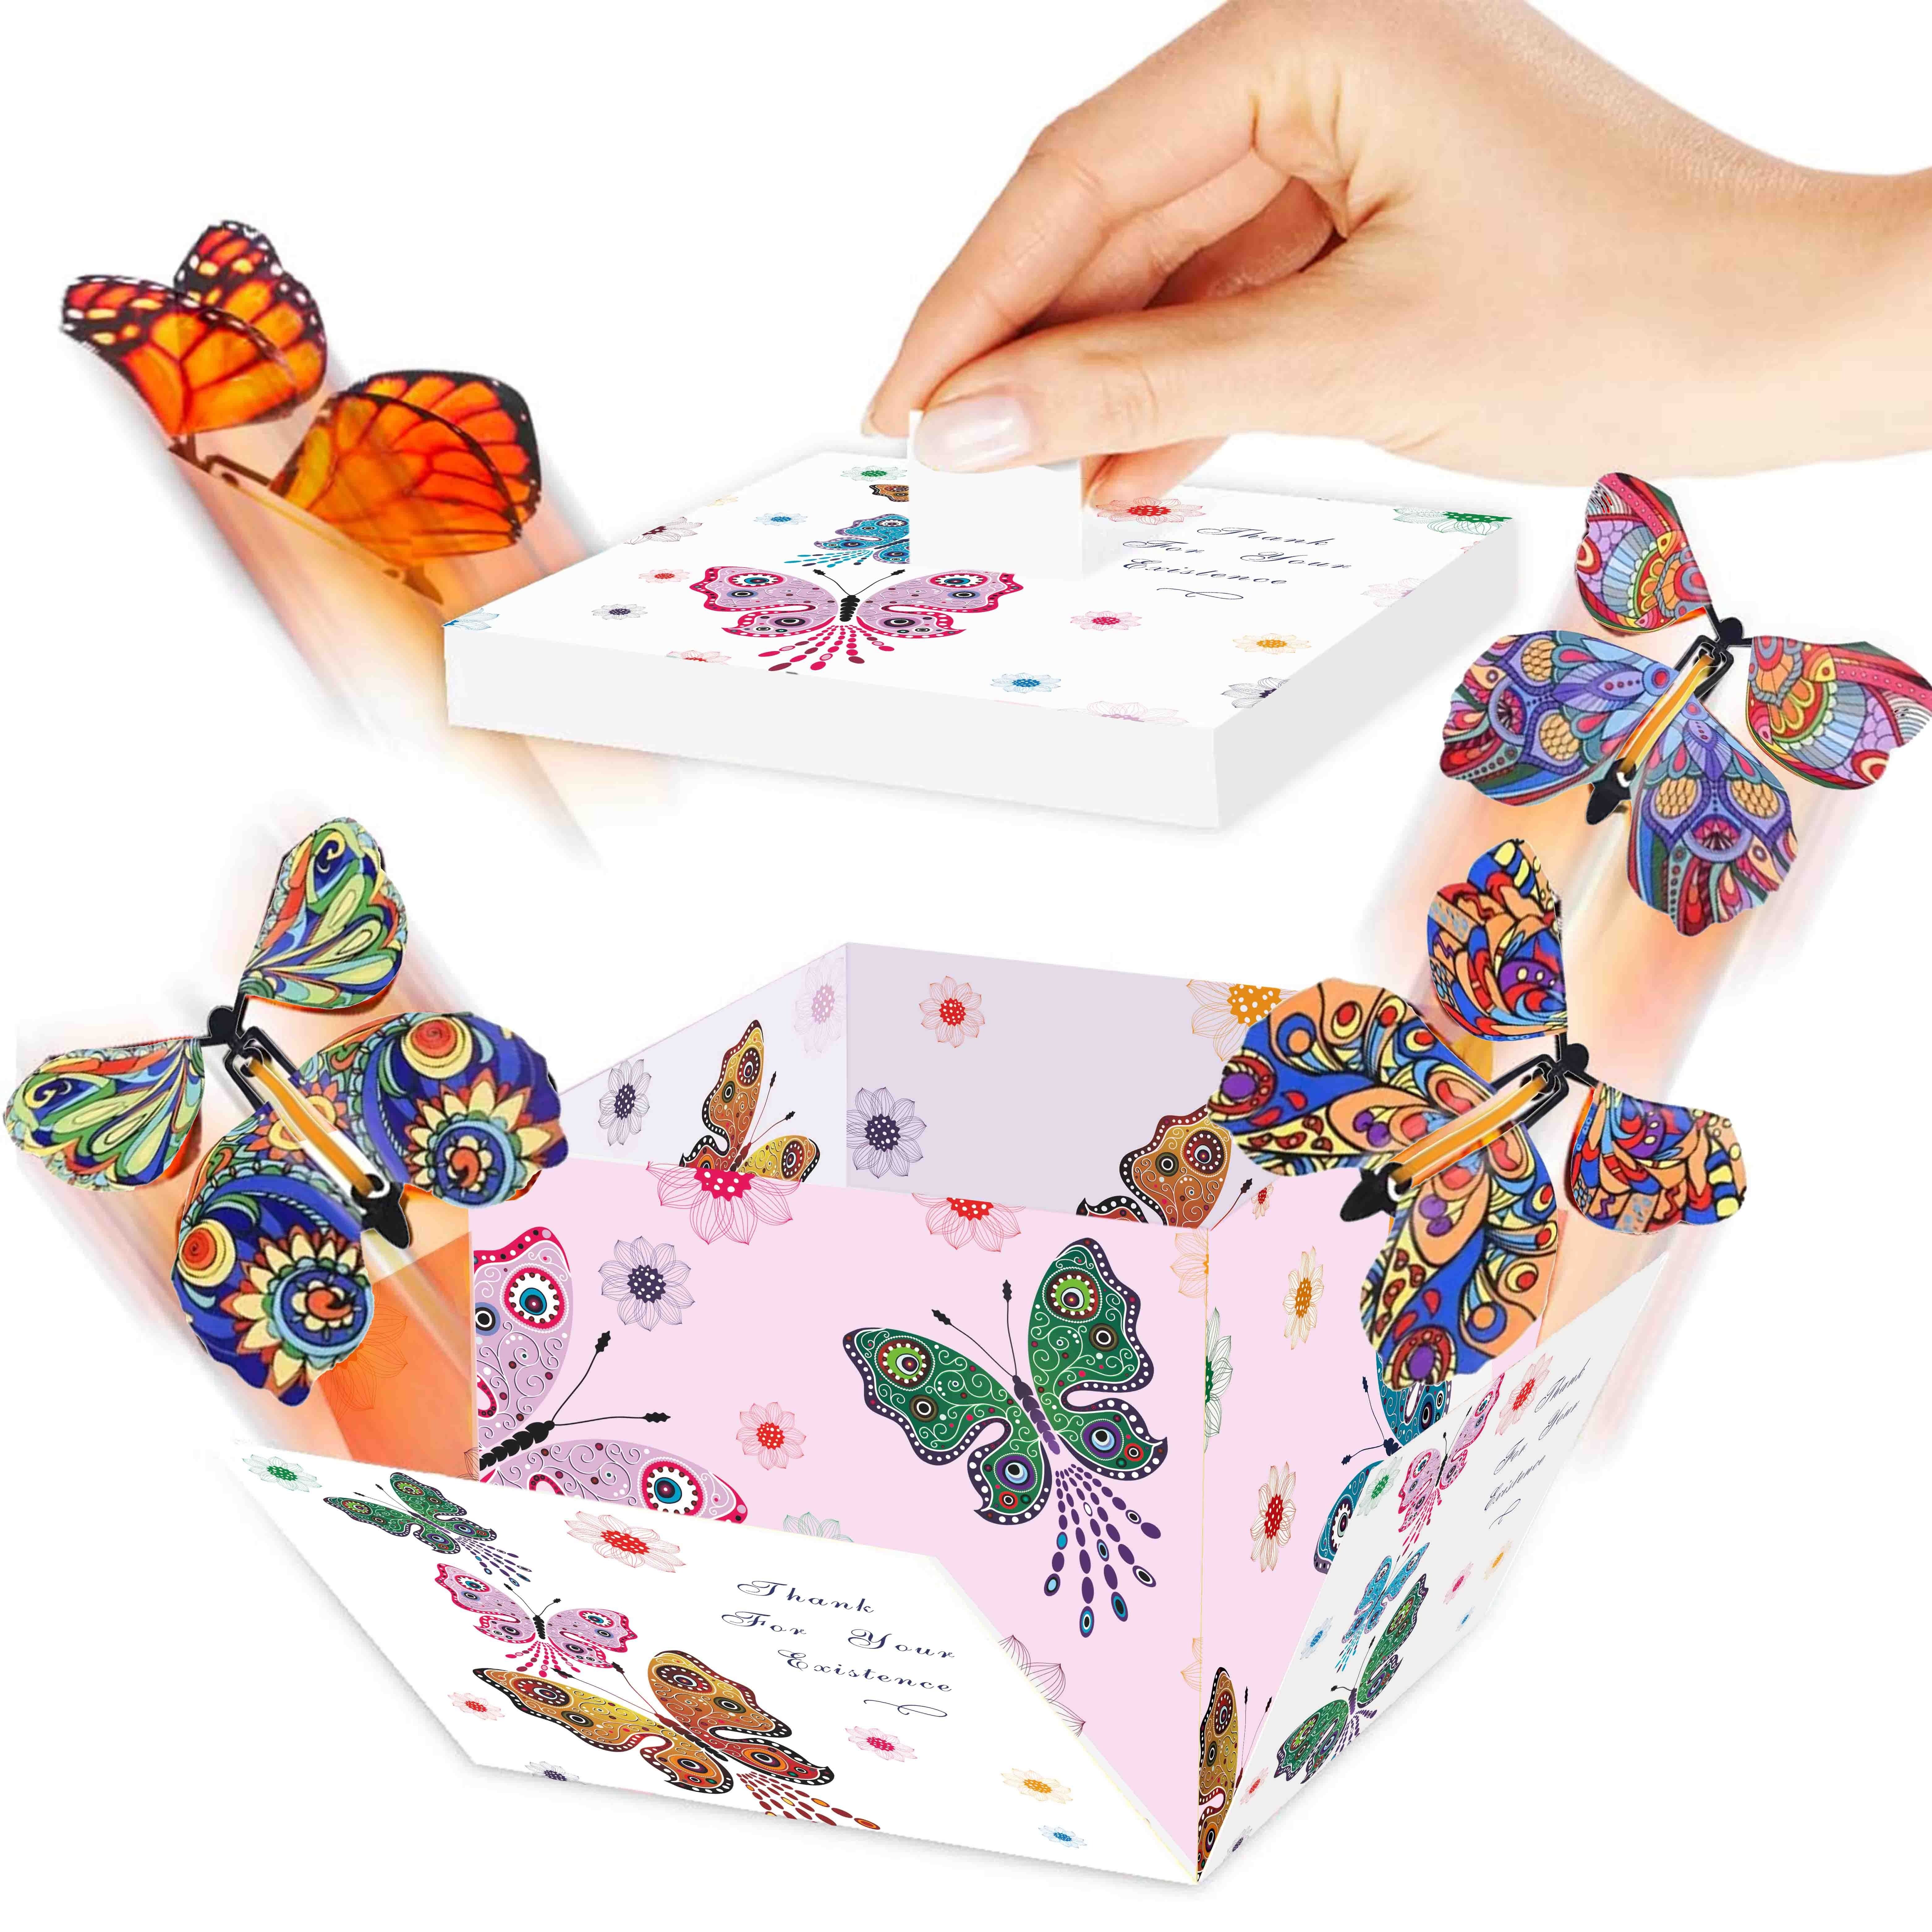 Caja sorpresa), Caja de explosión de pastel sorpresa, Caja de explosión,  Caja de mariposa Caja de regalo de explosión, Caja de regalo sorpresa, Caja